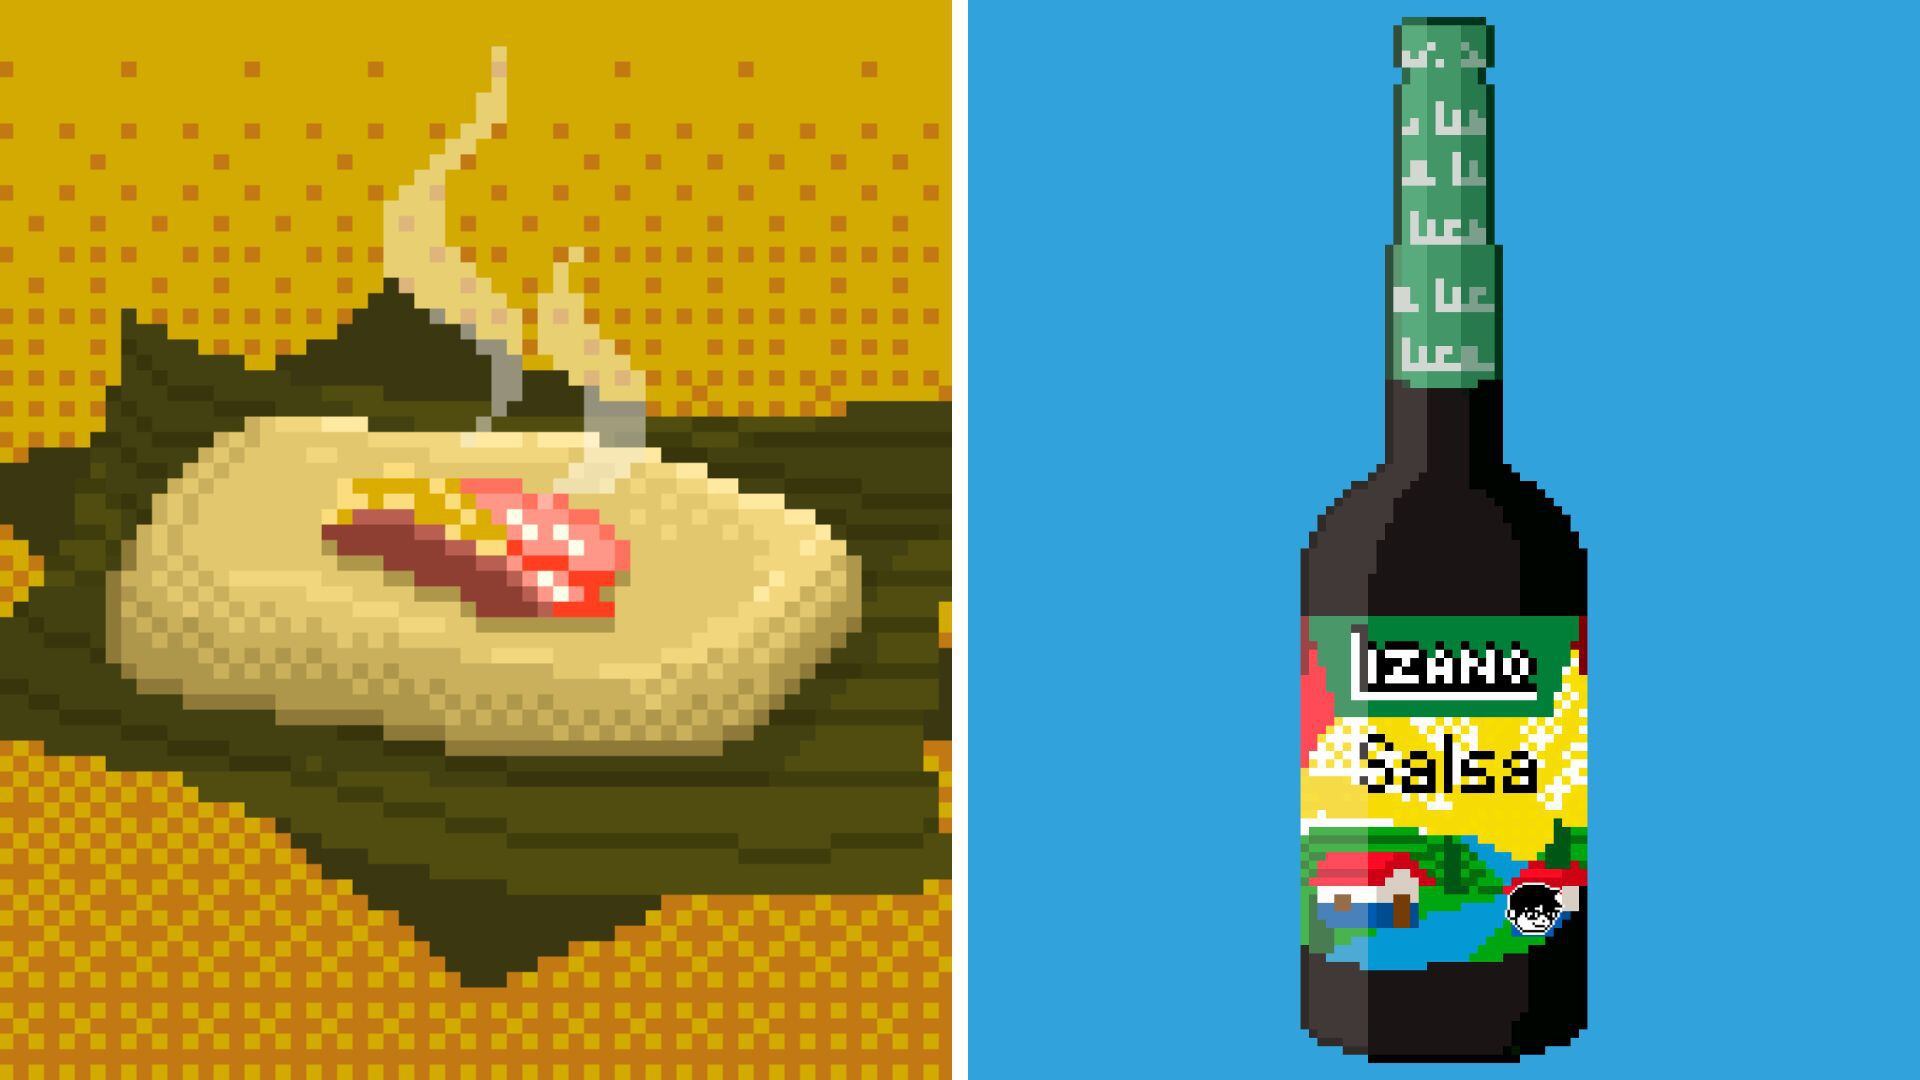 Colorblind Pixel descubrió su afinidad por el arte digital cuando estaba en la universidad. Le resulta natural convertir elementos gastronómicos, como platillos típicos, salsas y bebidas, en píxeles.